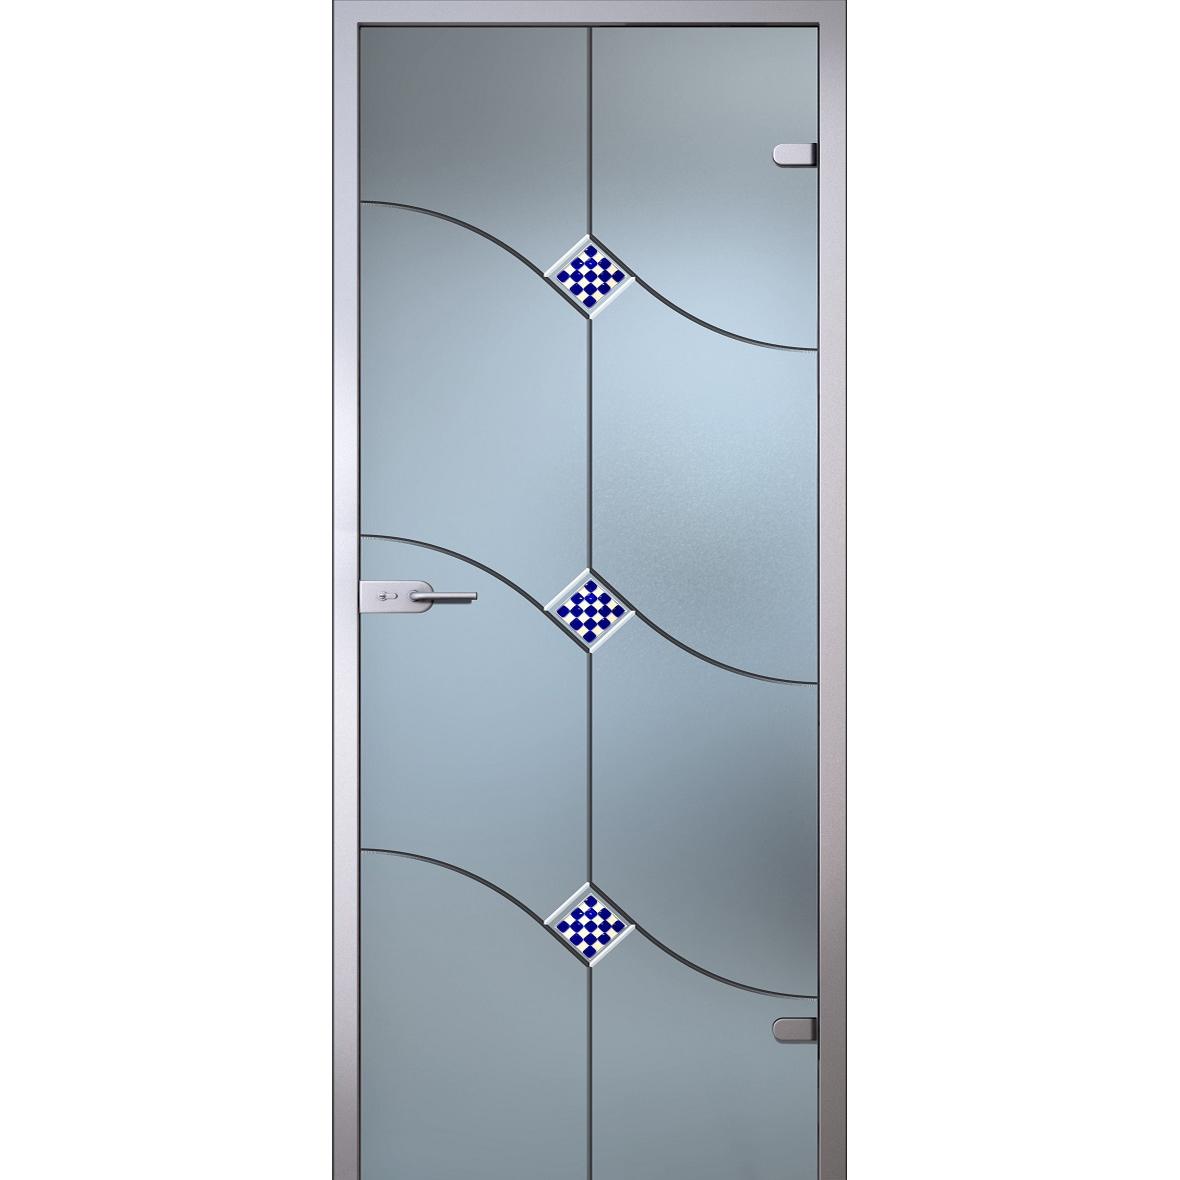 Дверь межкомнатная из стекла: Стеклянные двери — эксклюзивно, надежно и недорого!